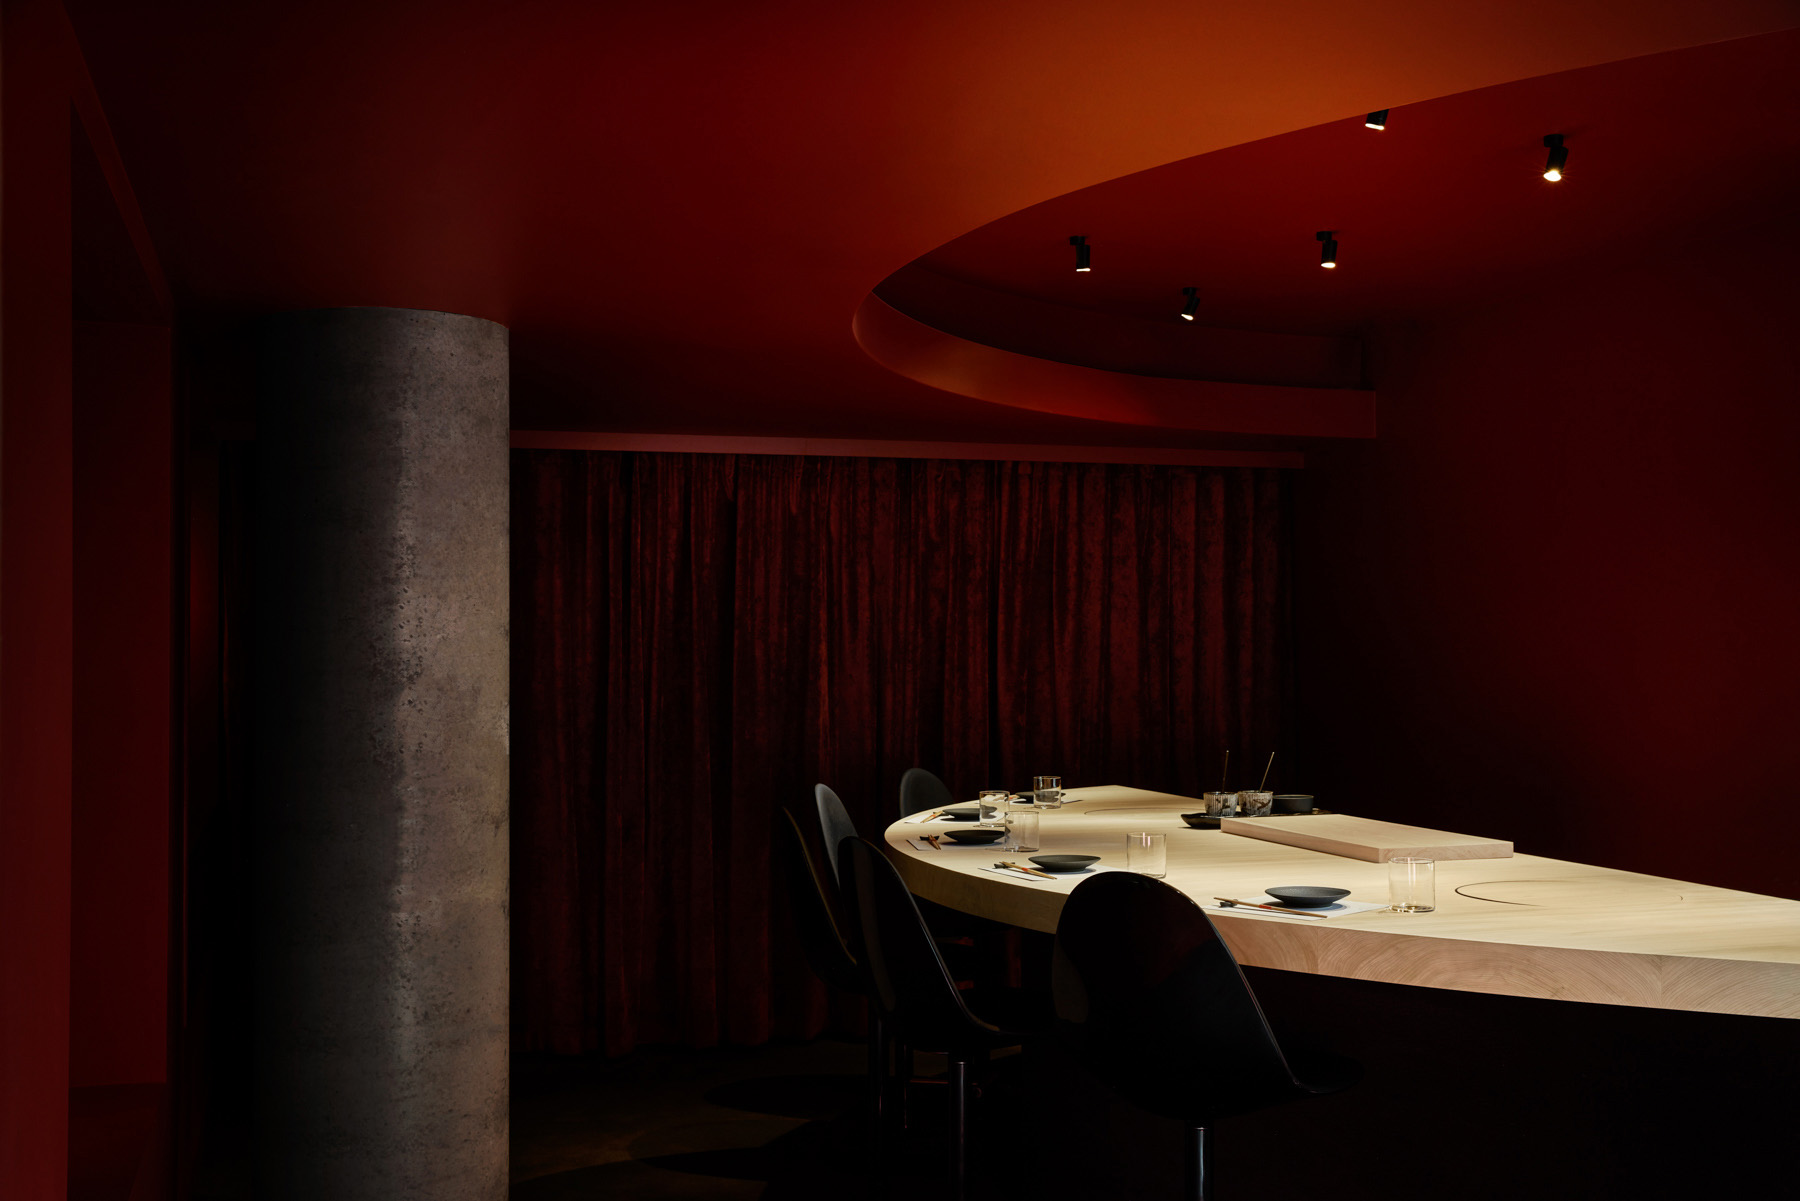 餐廳設計,壽司店設計,休閑餐廳設計,Richards & Spence,現代風格餐廳設計案例,澳大利亞壽司店設計,Sushi Room,極簡美學,極簡風格餐廳